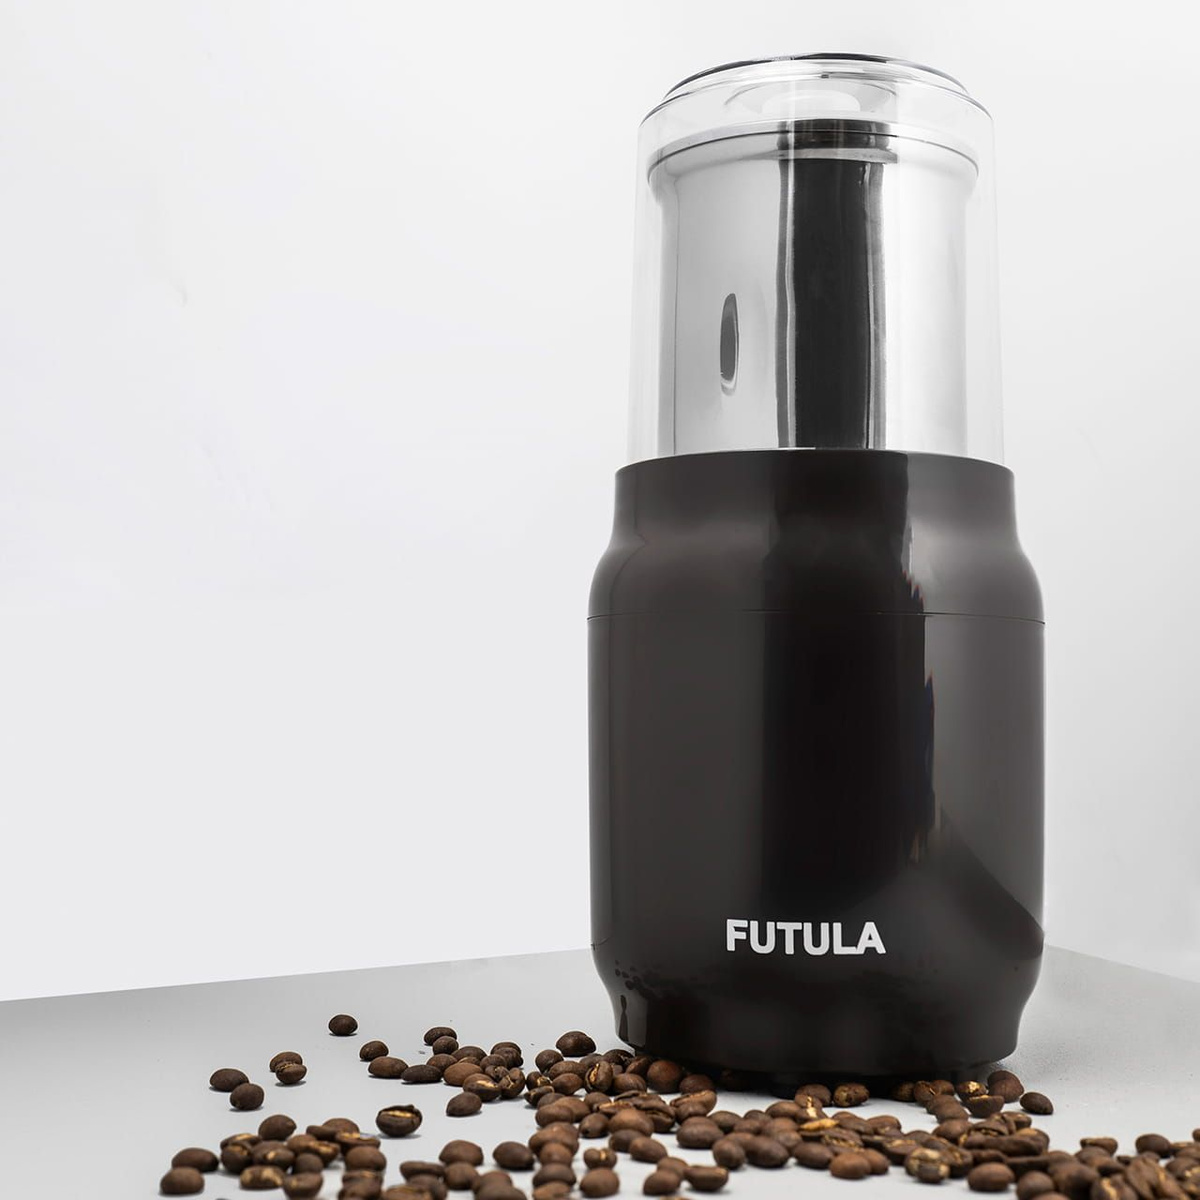 Вся продукция бренда Futula разрабатывается в рамках концепции минималистичного хай-тек дизайна, поэтому Futula CG8 - это не только функциональный, но и стильный кухонный гаджет